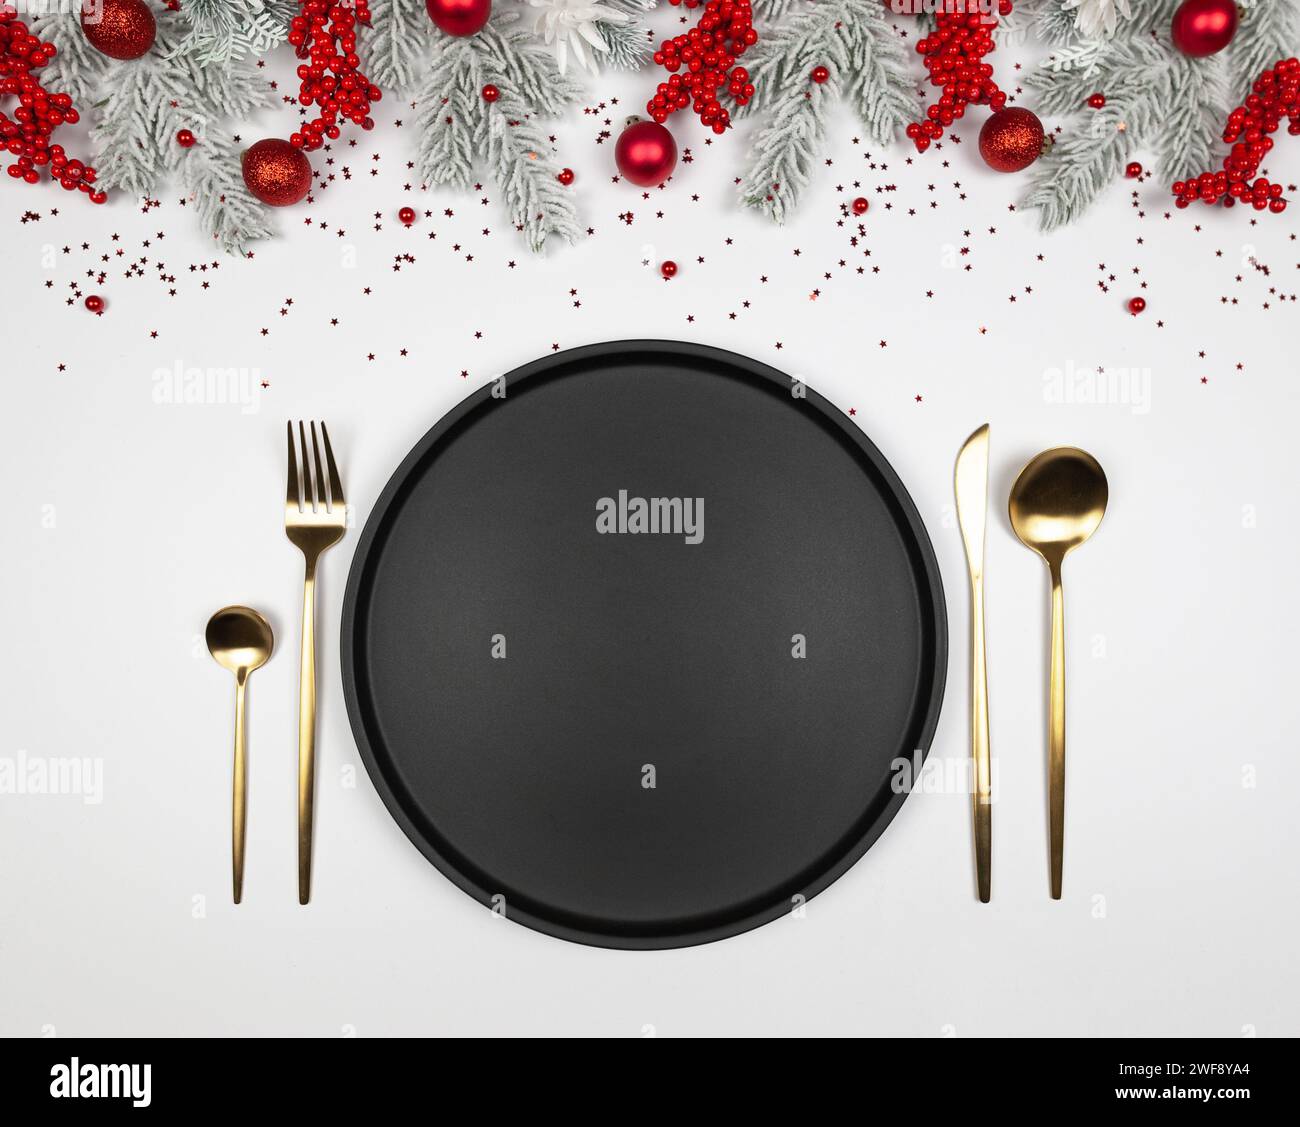 Composizione natalizia, piatto nero e posate d'oro, rami di abete, bacche rosse, bauble su sfondo bianco. Foto Stock